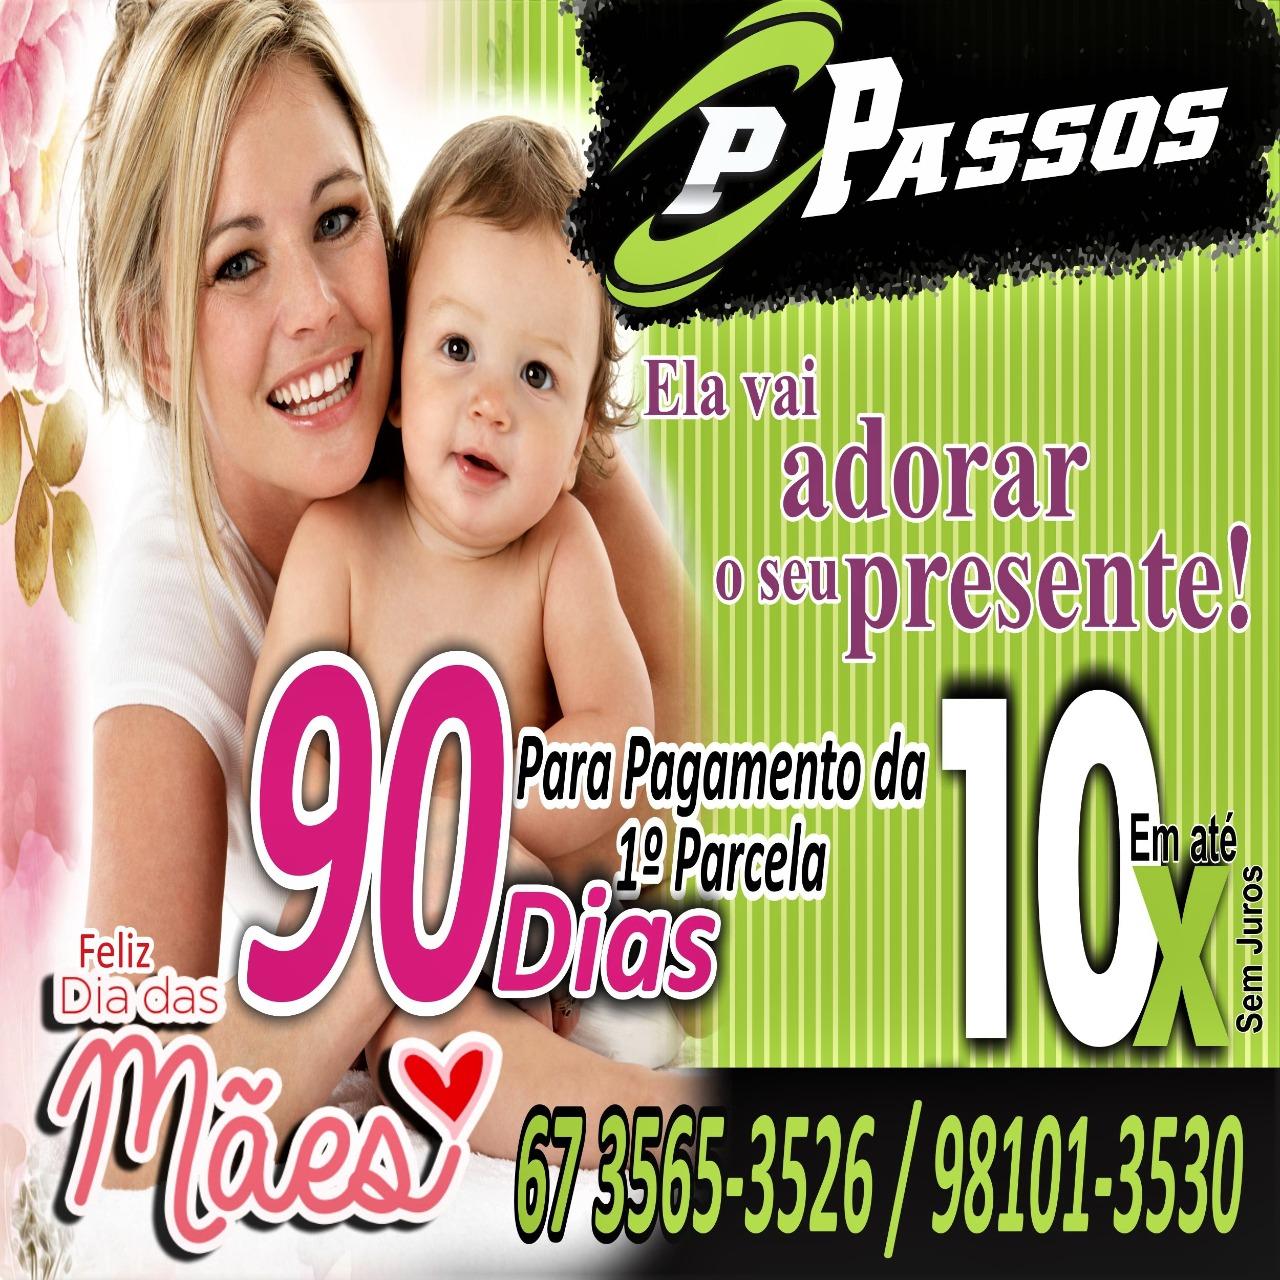 Loja Passos oferece promoção do Dia das Mães durante todo o mês de maio